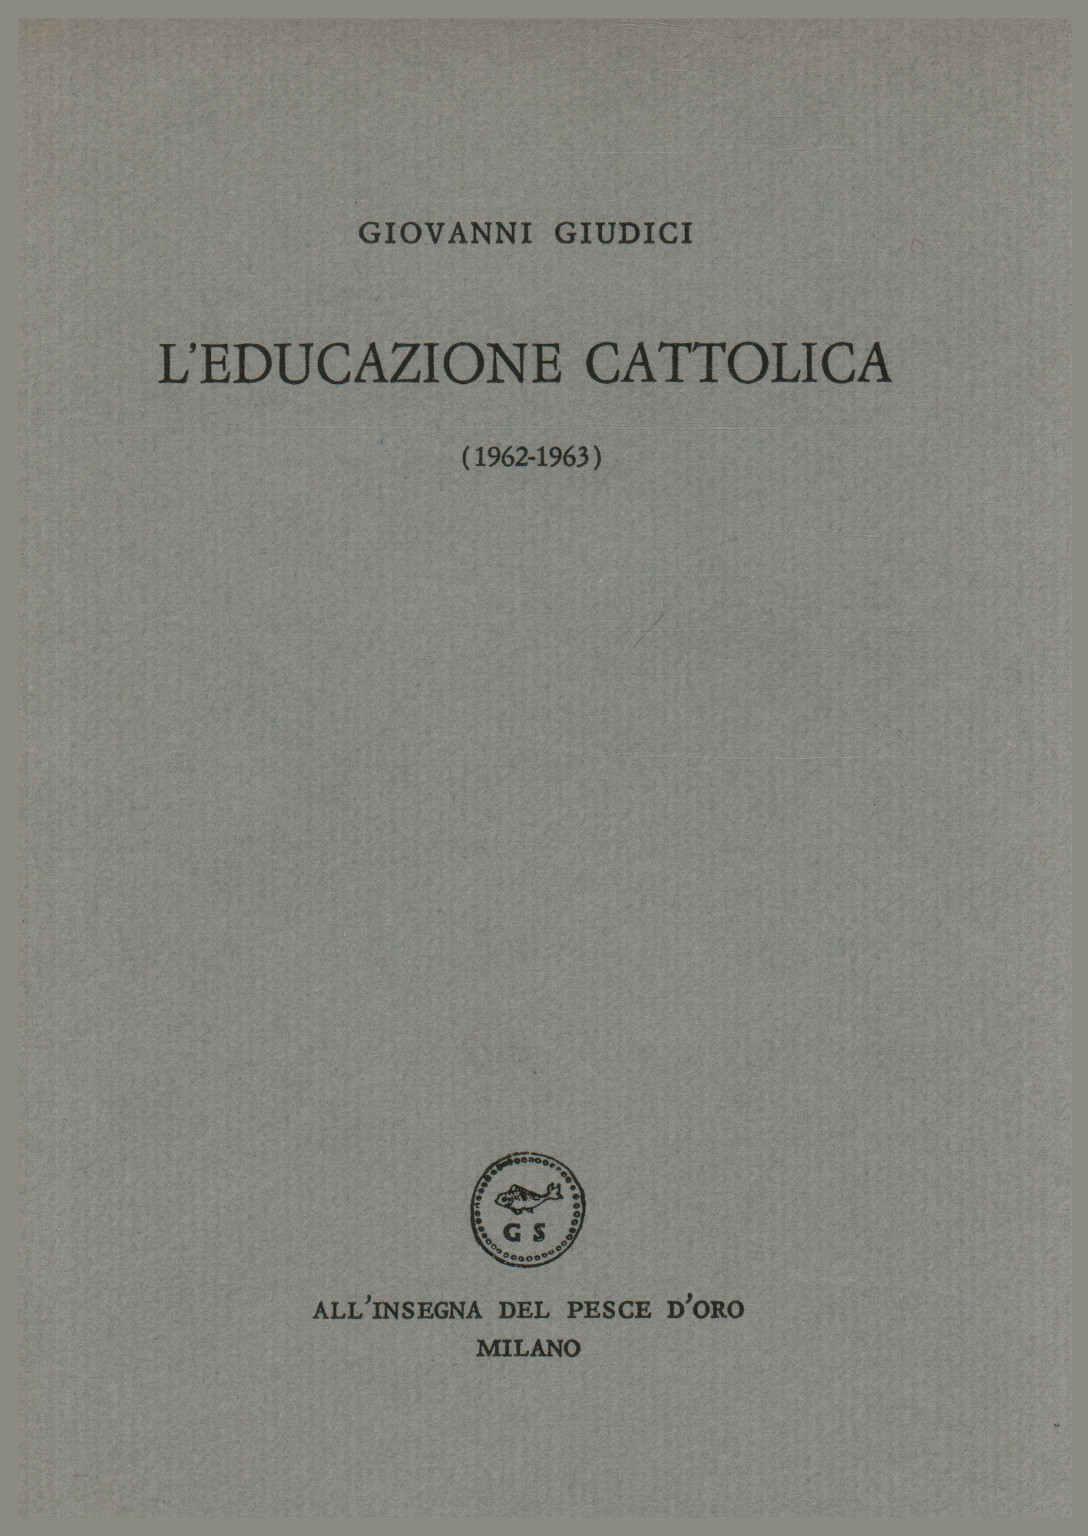 L'educazione cattolica (1962-1963), s.a.